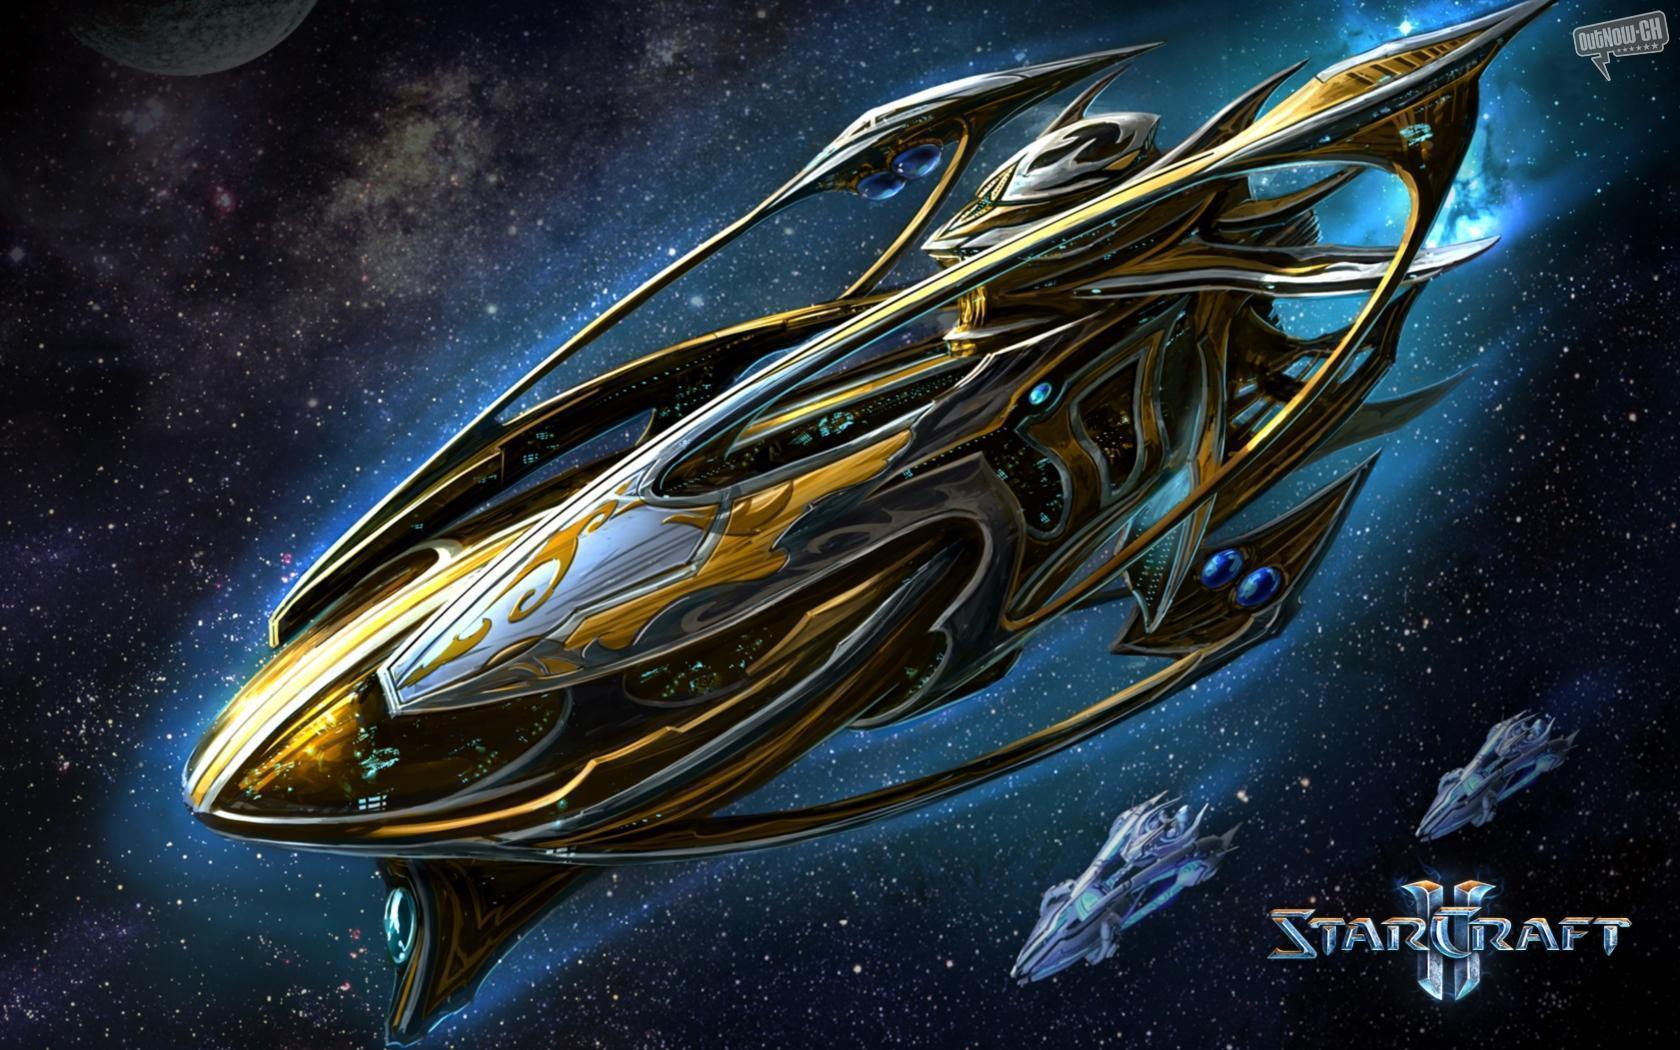 Starcraft 2 Wallpaper 1680x1050